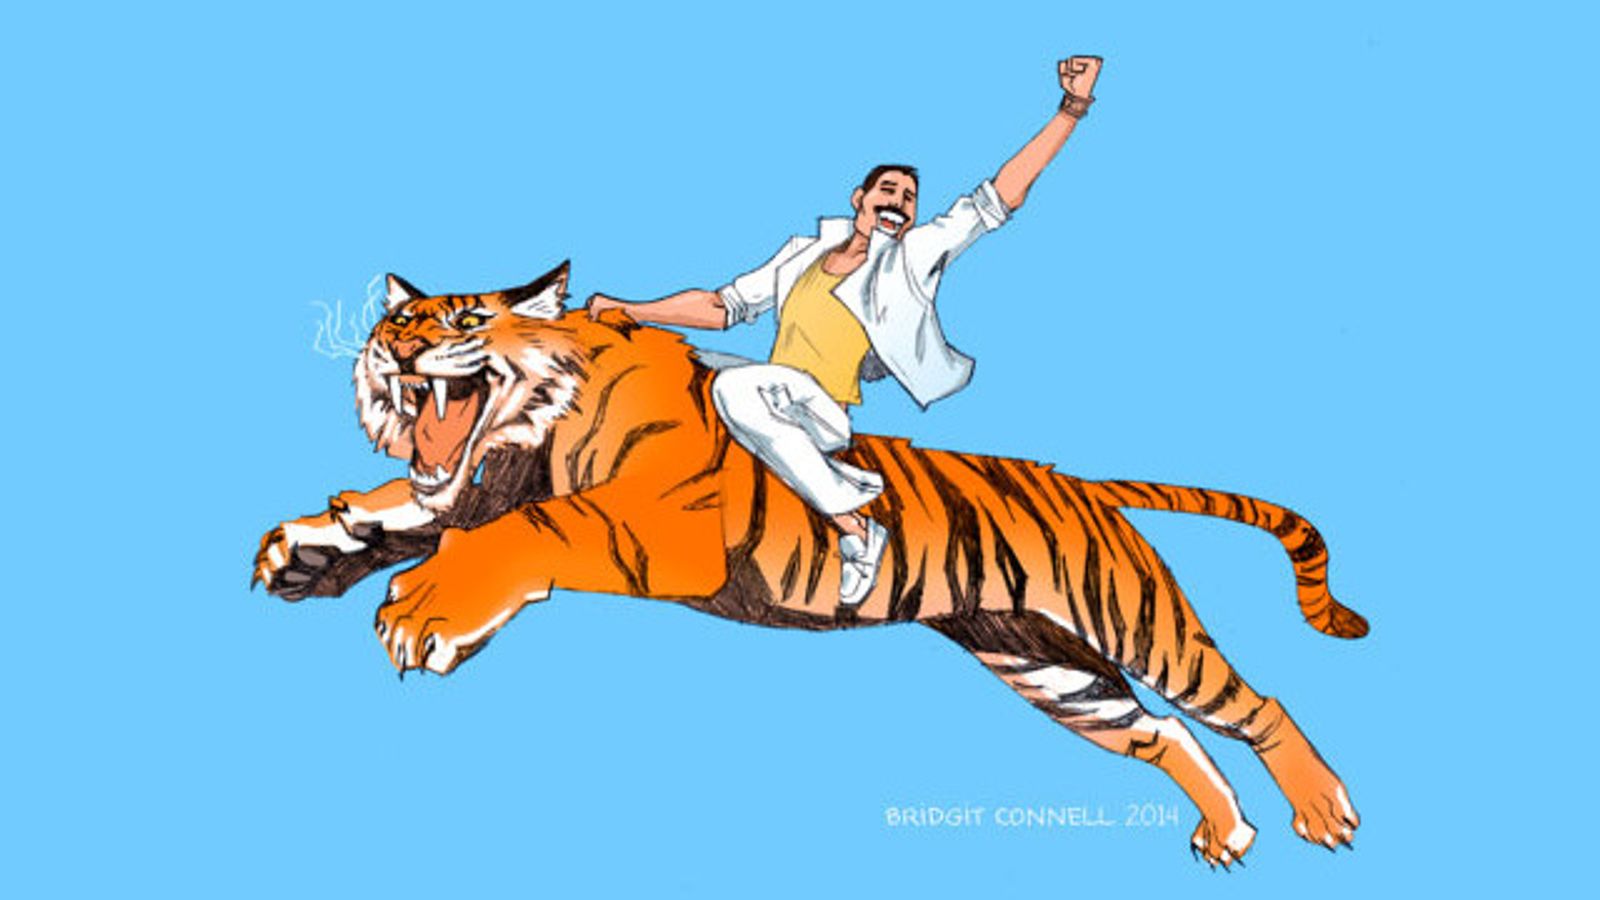 AdamMaleBlog to Give Away 'Freddie Mercury On A Flying Tiger' Art